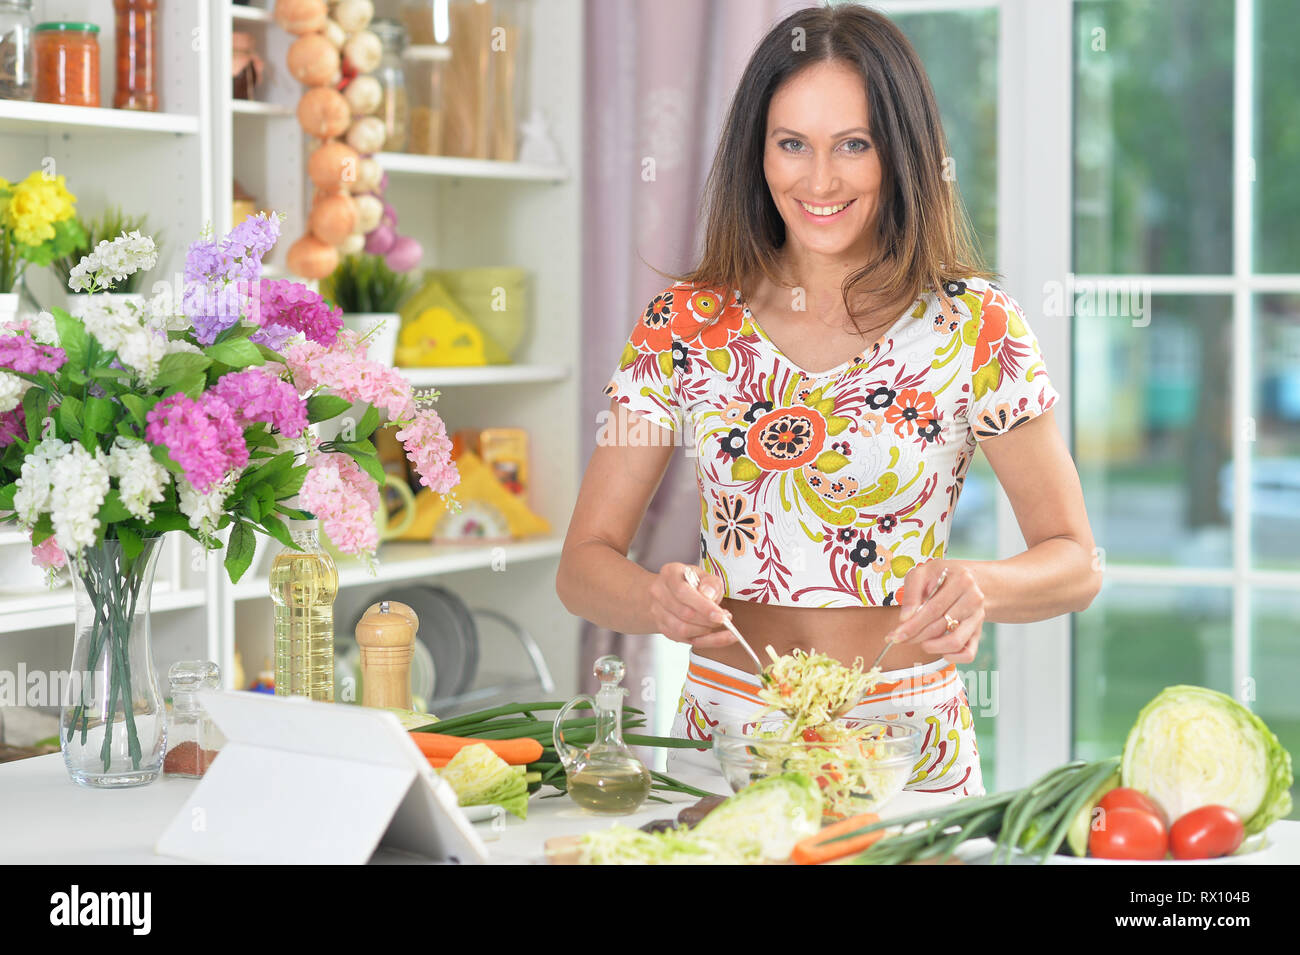 Porträt der jungen Frau bereitet leckeres gesundes Essen in der Küche Stockfoto